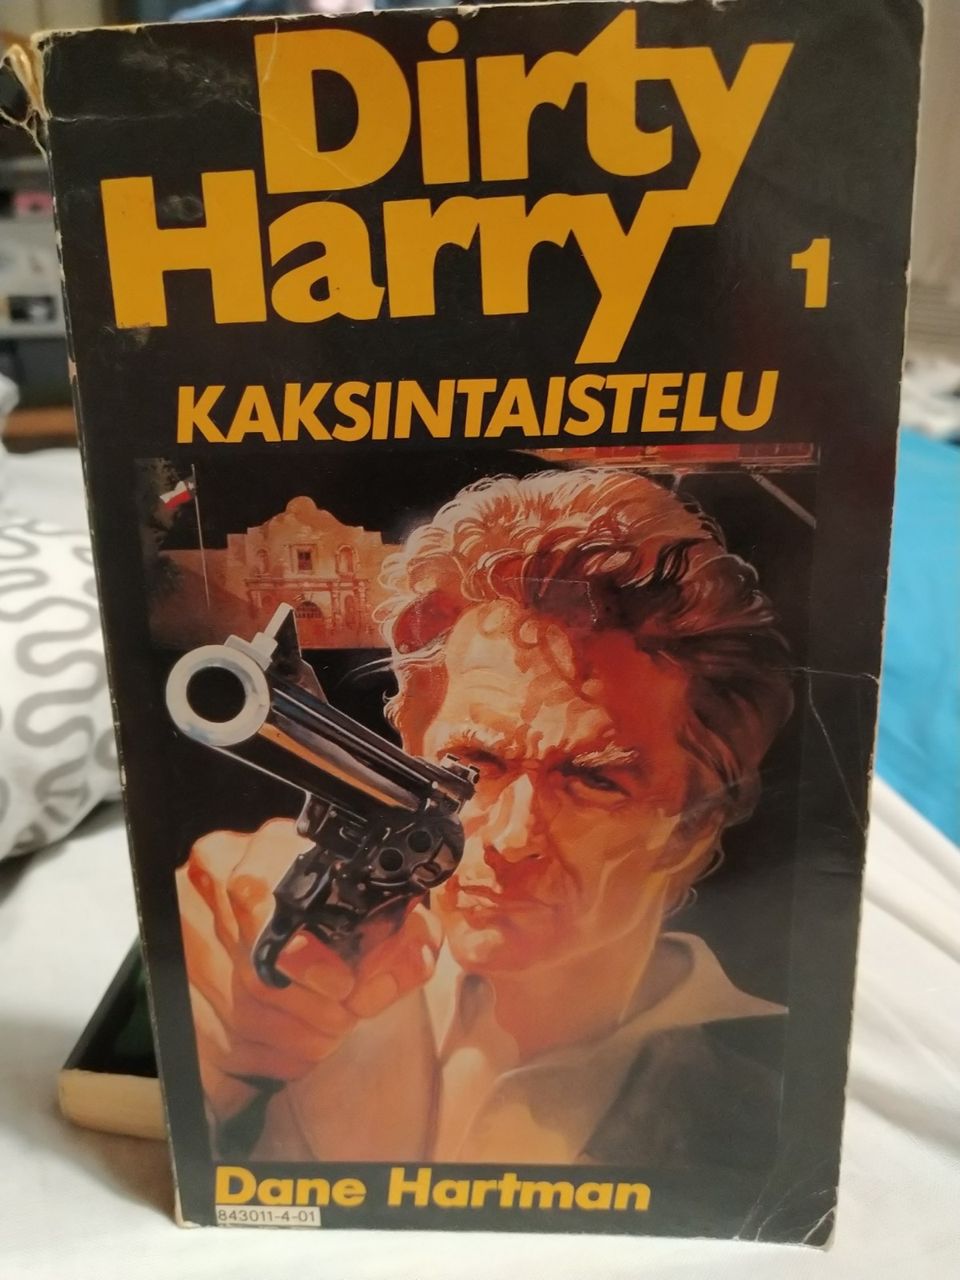 Dirty Harry 1 (Likainen Harry) - Kaksintaistelu